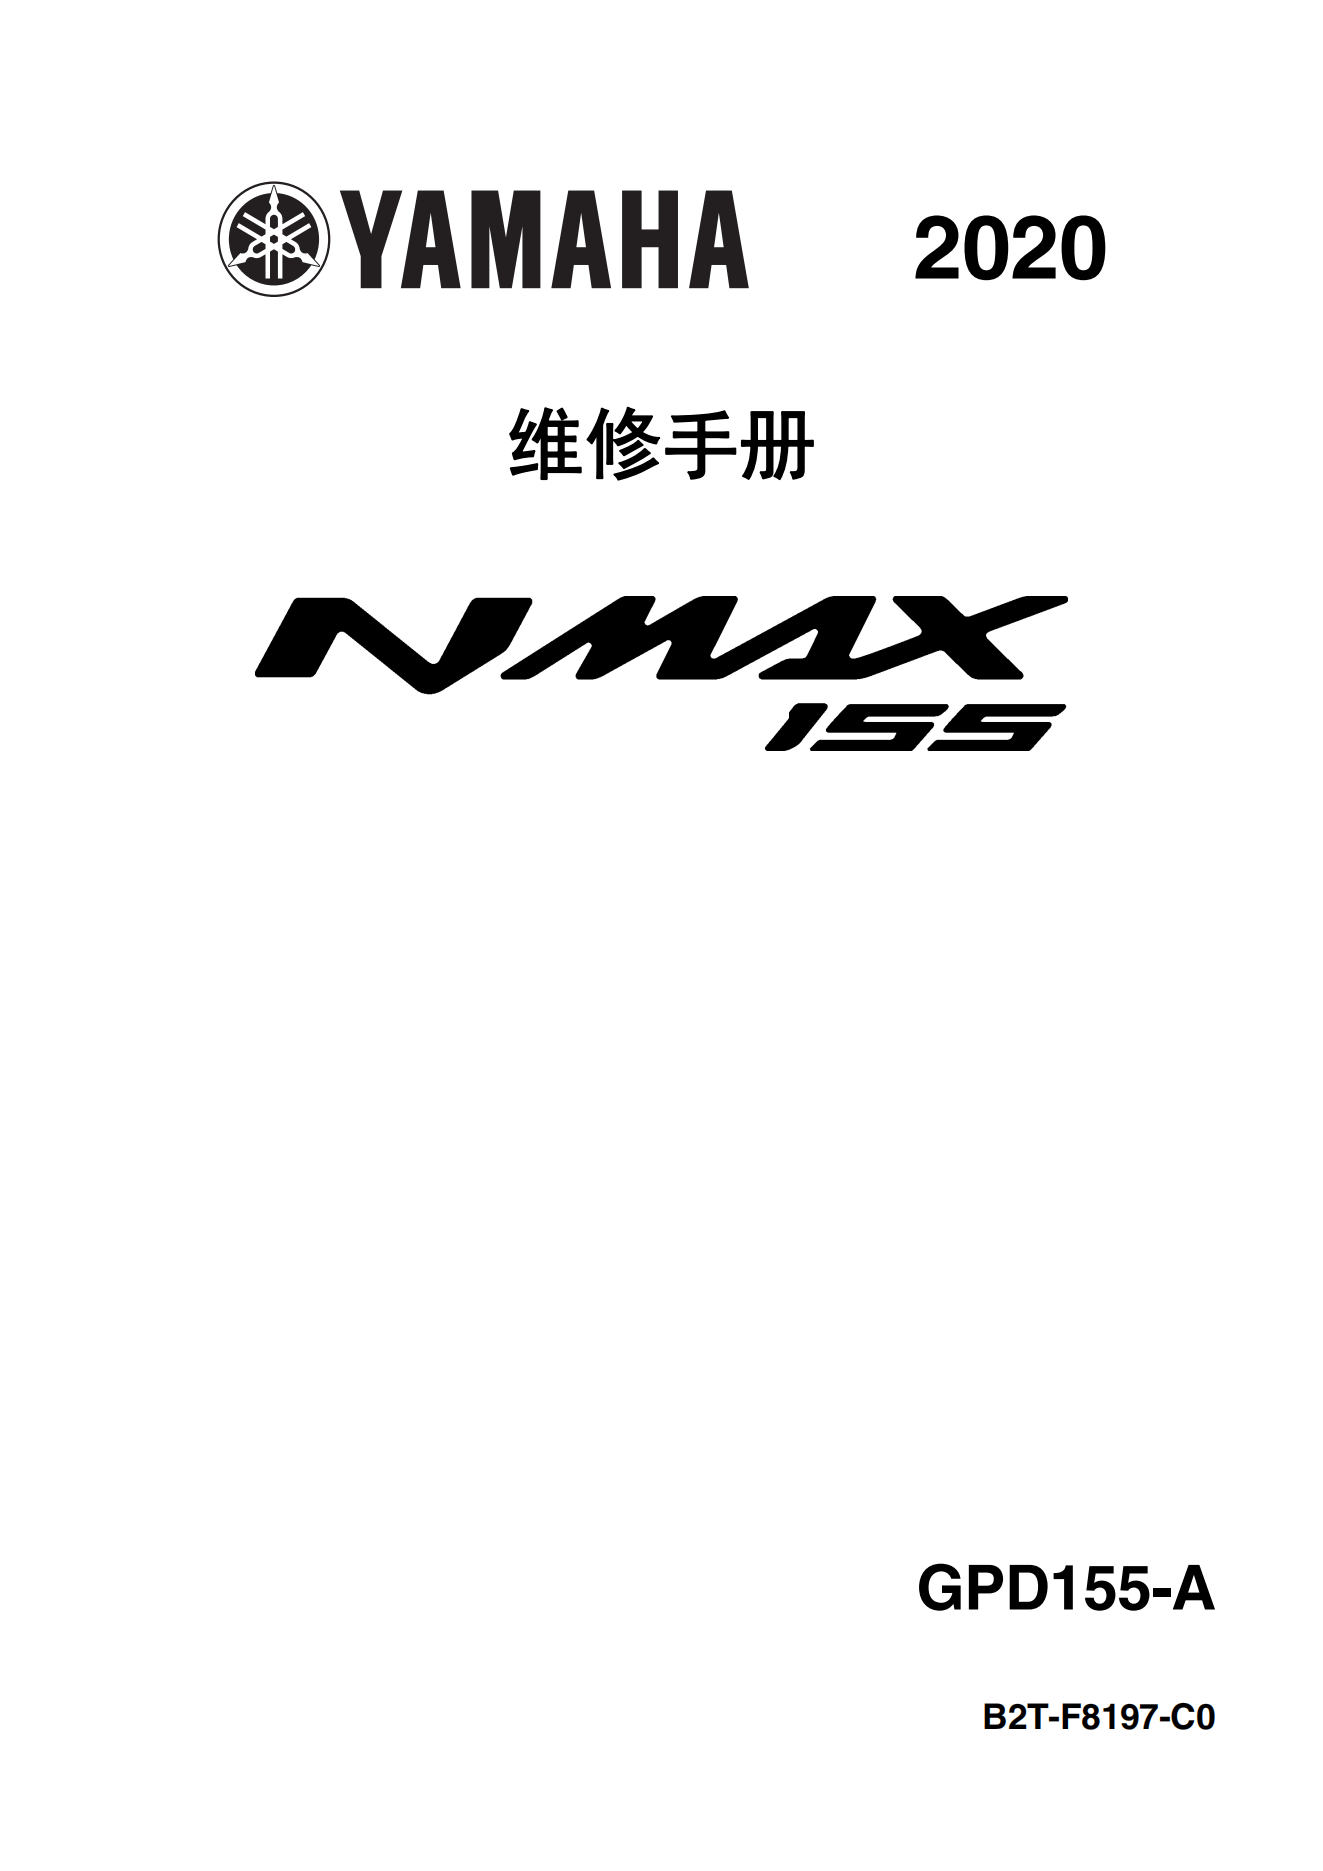 原版中文2020年雅马哈nmax155维修手册GPD150-A维修手册插图